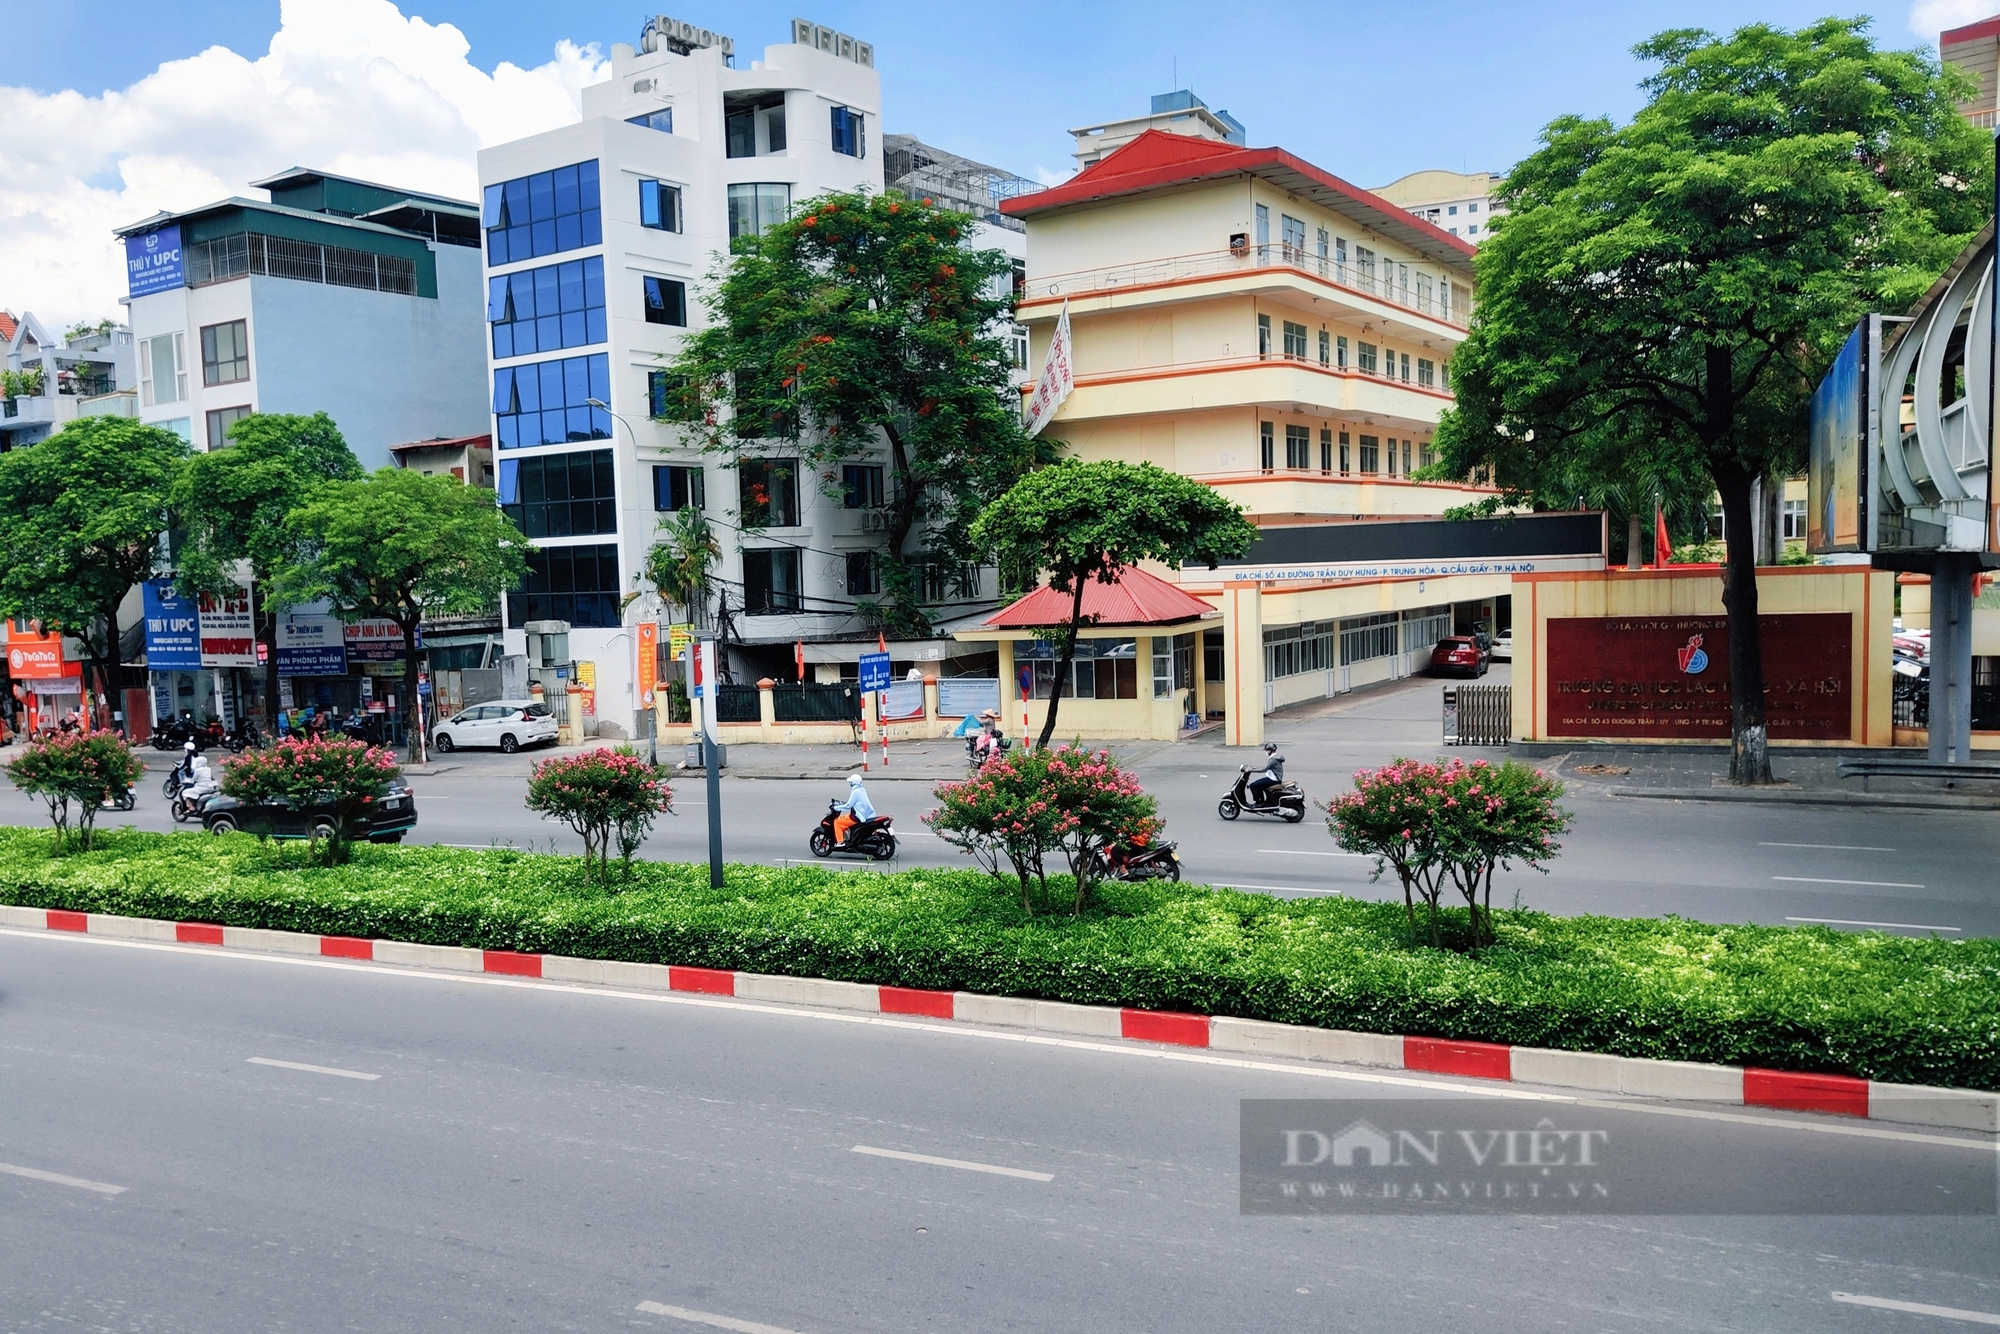 Hoa tường vi khoe sắc trên đường Nguyễn Chí Thanh sau khi phong lá đỏ bị nhổ bỏ  - Ảnh 2.